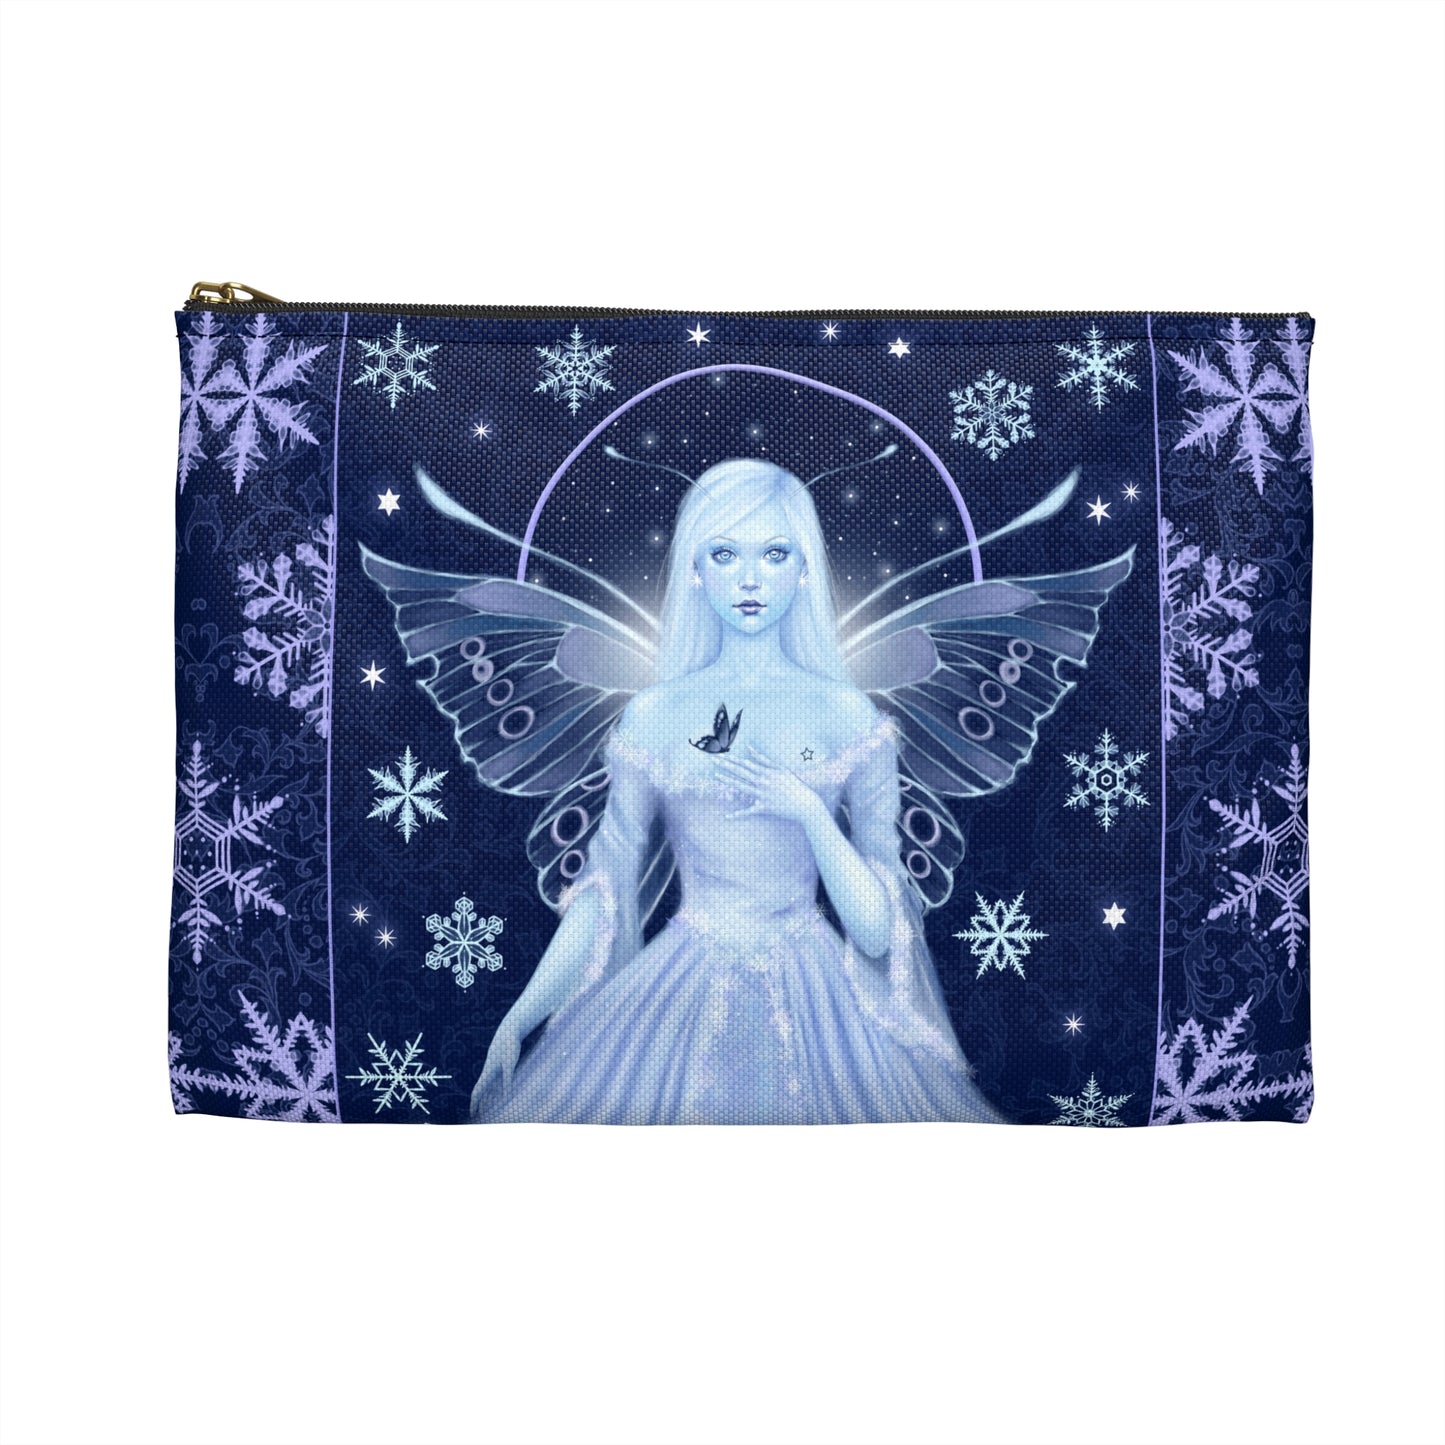 Accessory Bag - Snow Fairy